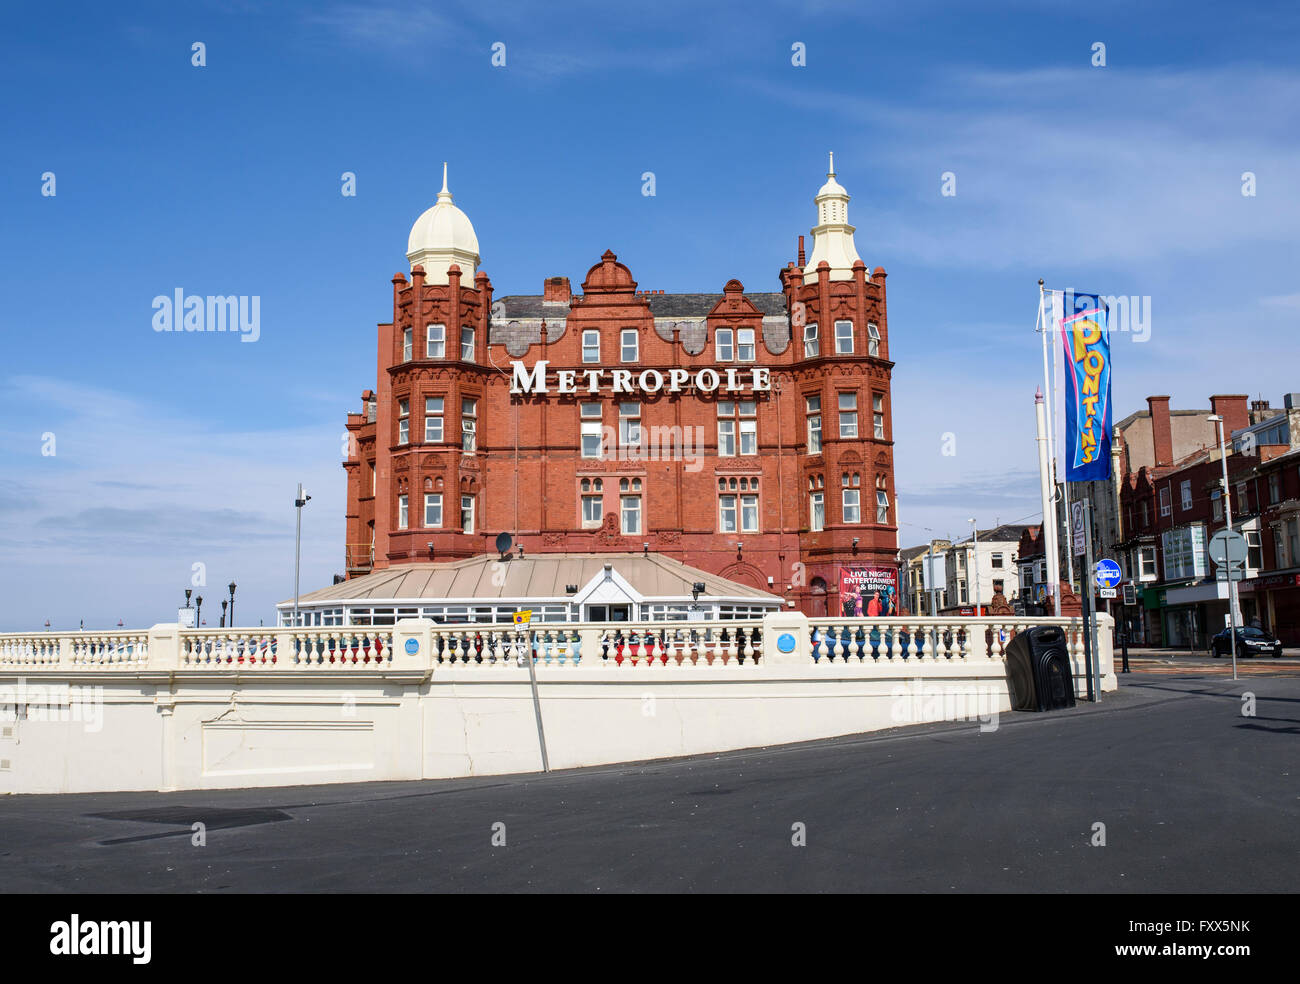 Il metropole hotel sul lungomare di Blackpool, Lancashire Foto Stock